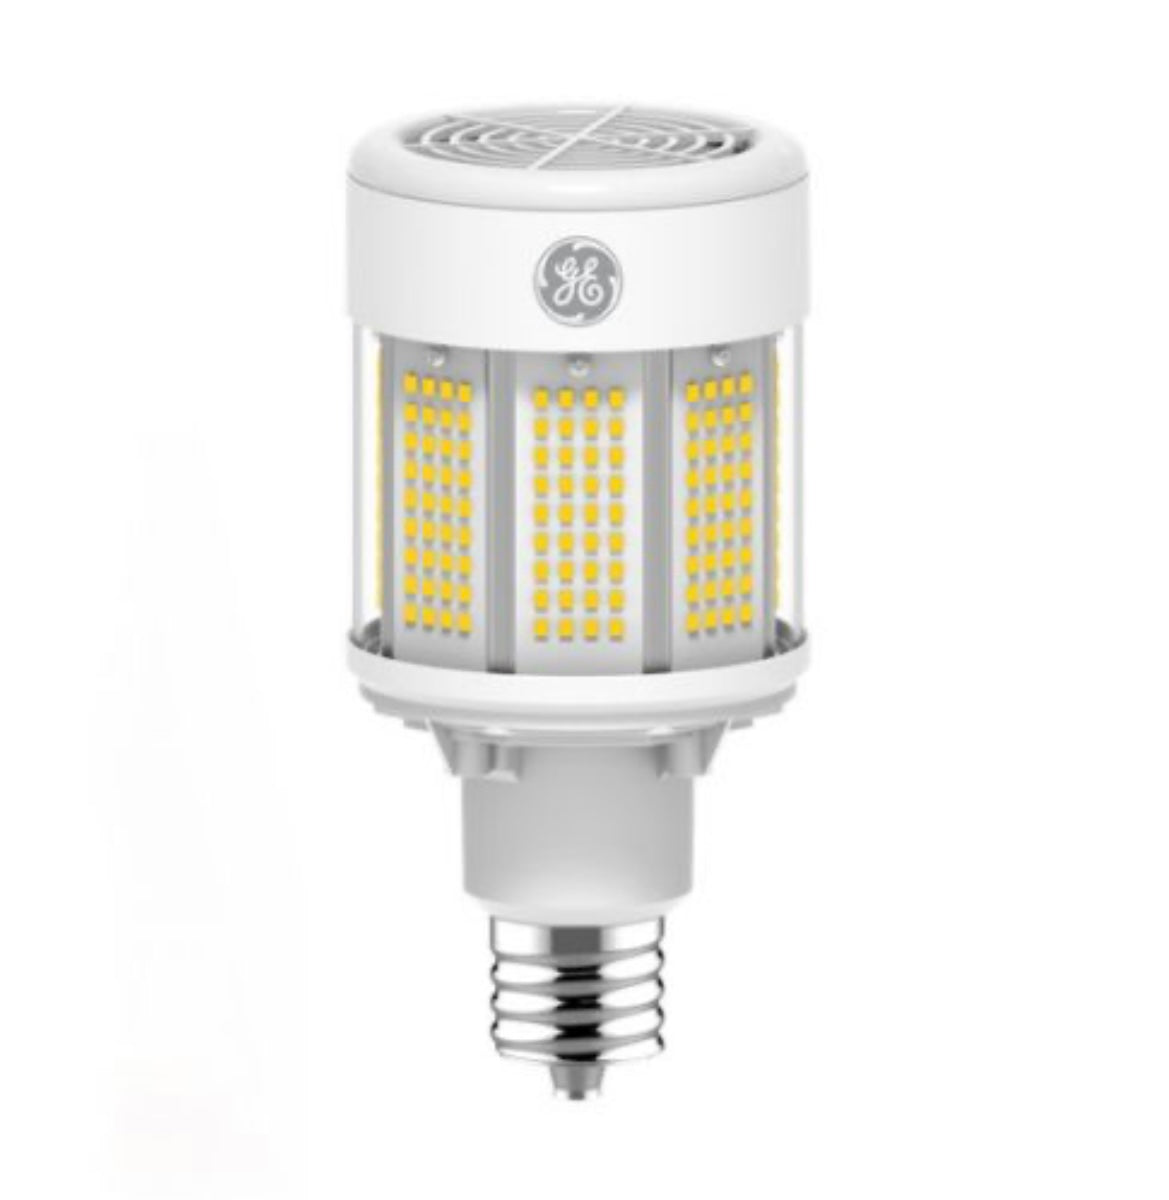 GE 43258 - LED80/2M250/740 - 43258 - LED Lamp - HID Replacement - 4000 Kelvin - 11800 Lumens